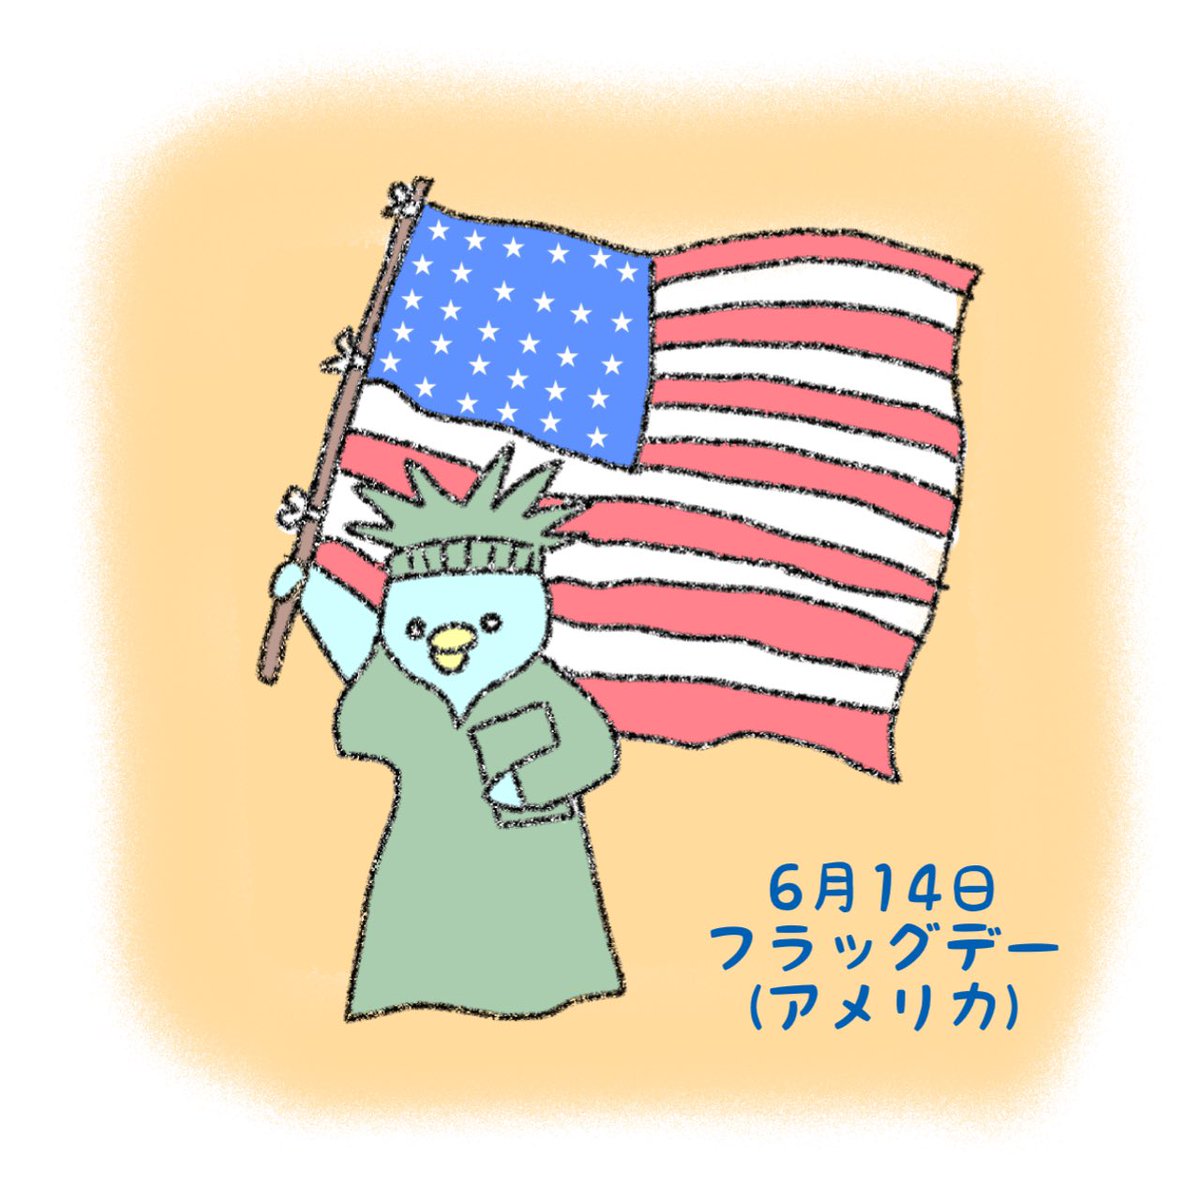 アメリカ国旗 のイラスト マンガ コスプレ モデル作品 1 件 Twoucan